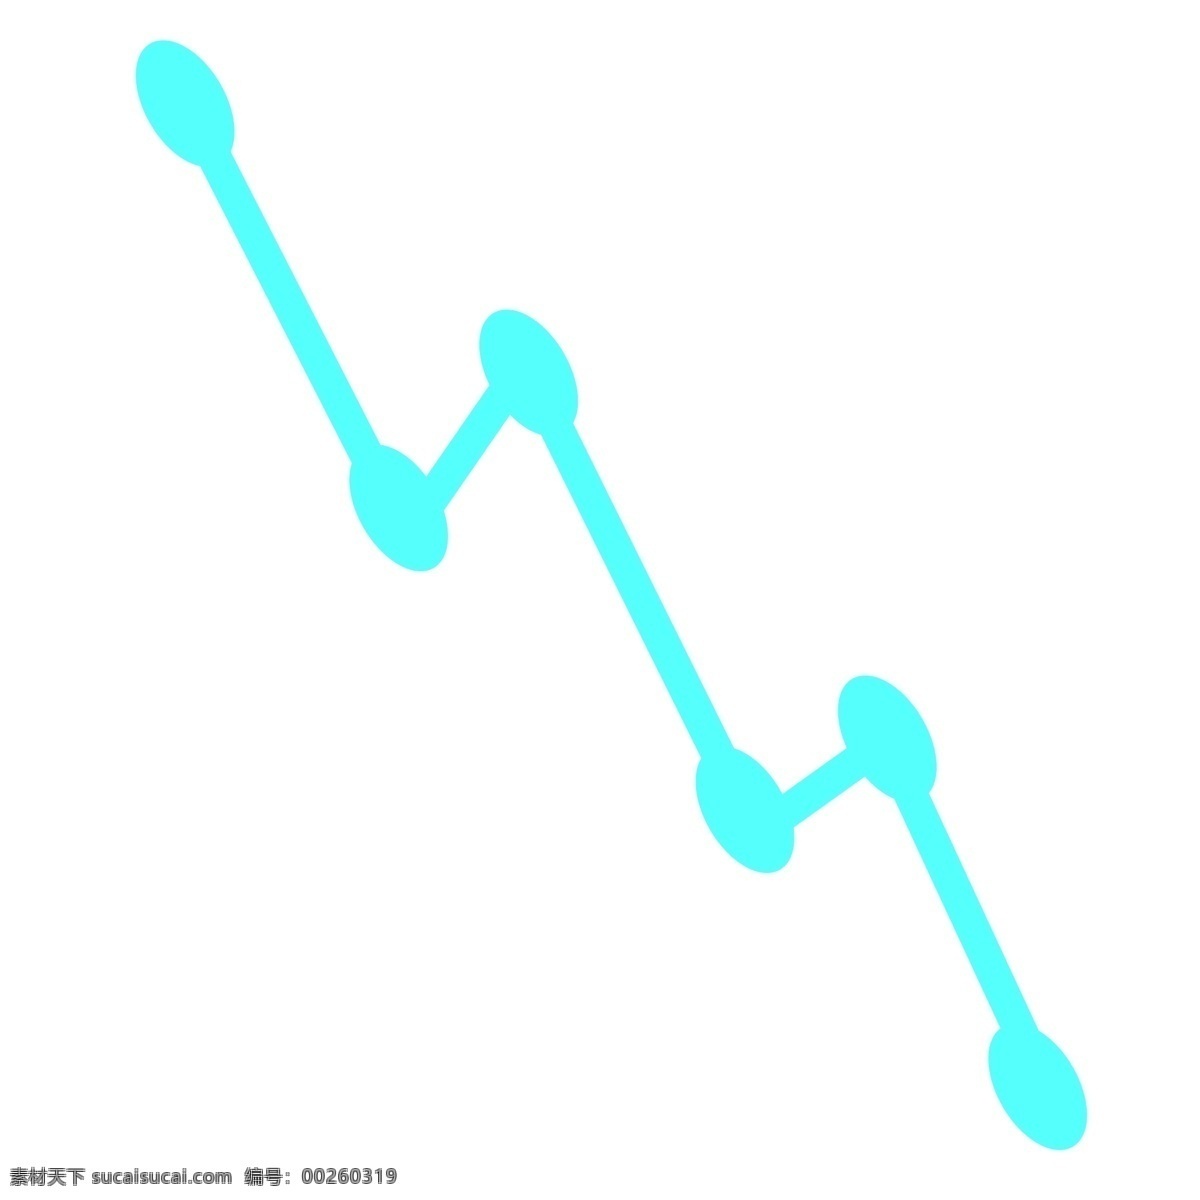 蓝色 业务 走势图 分析图 折线 蓝色折线